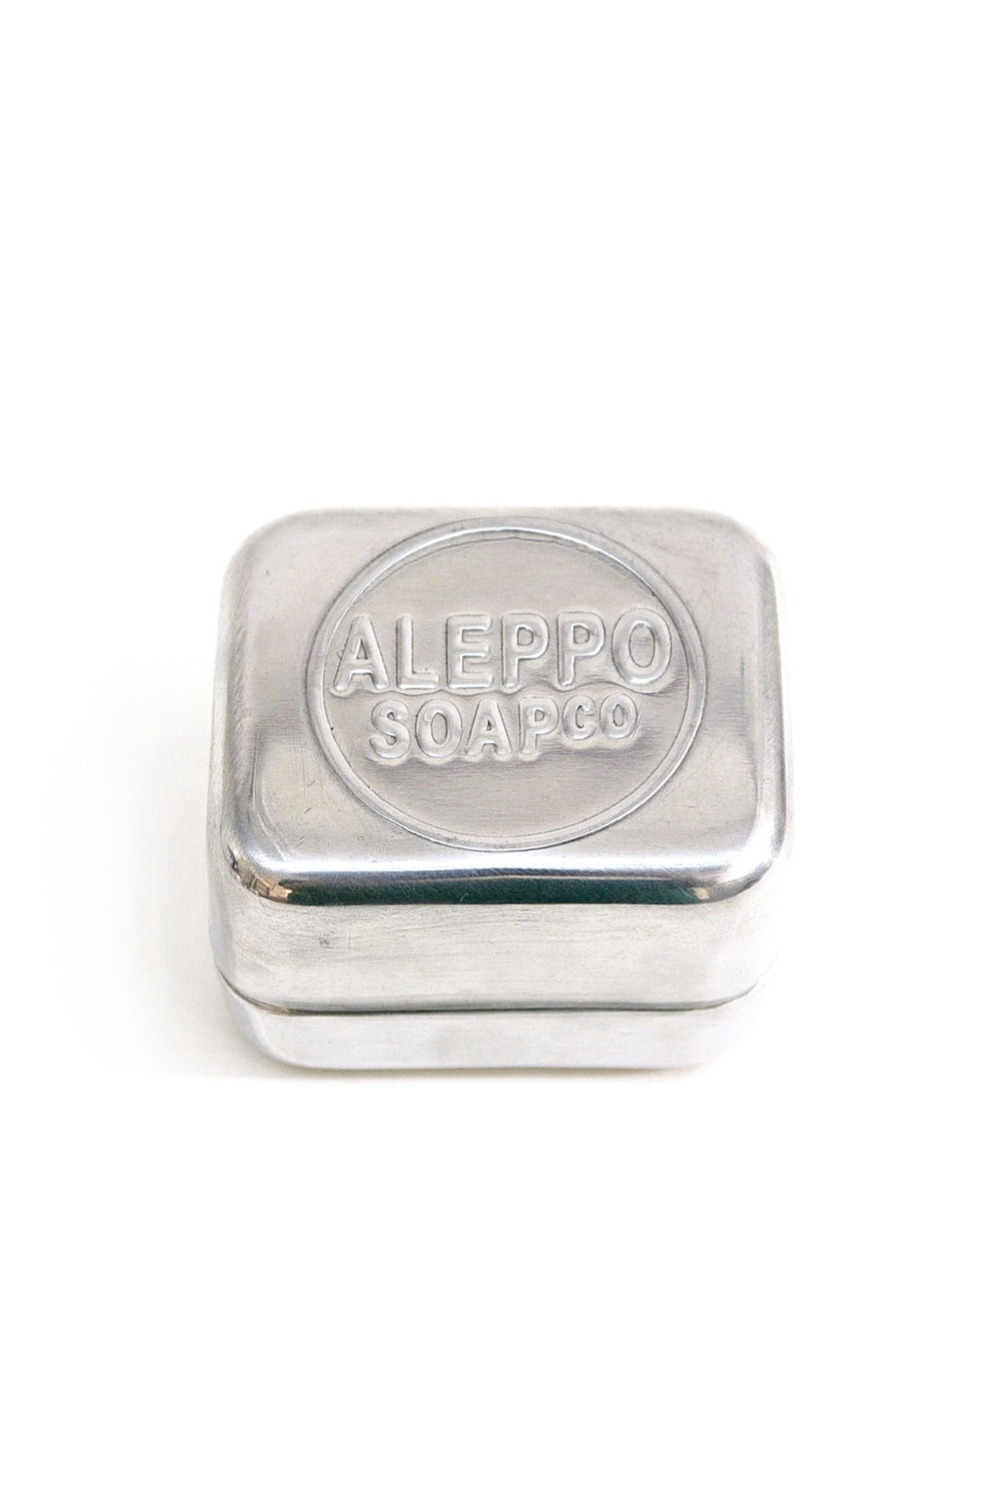 Aleppo Soap co Soap Box